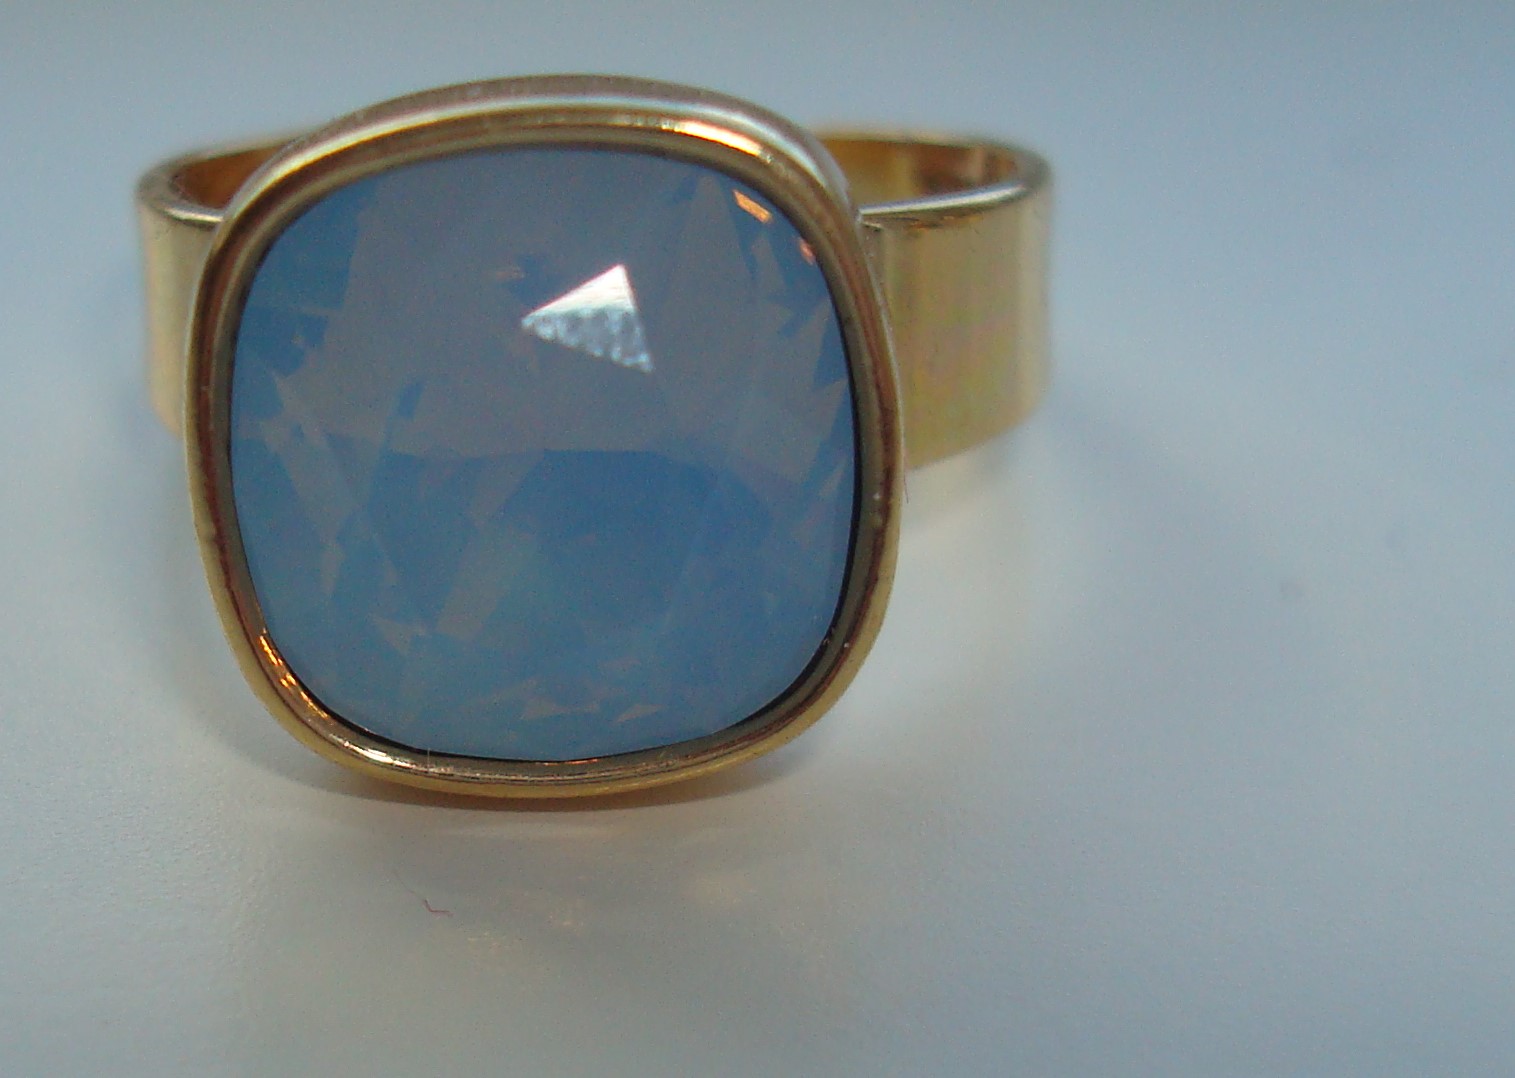 Verwonderlijk Gouden ring met blauwe steen - Jewels by steph AK-52